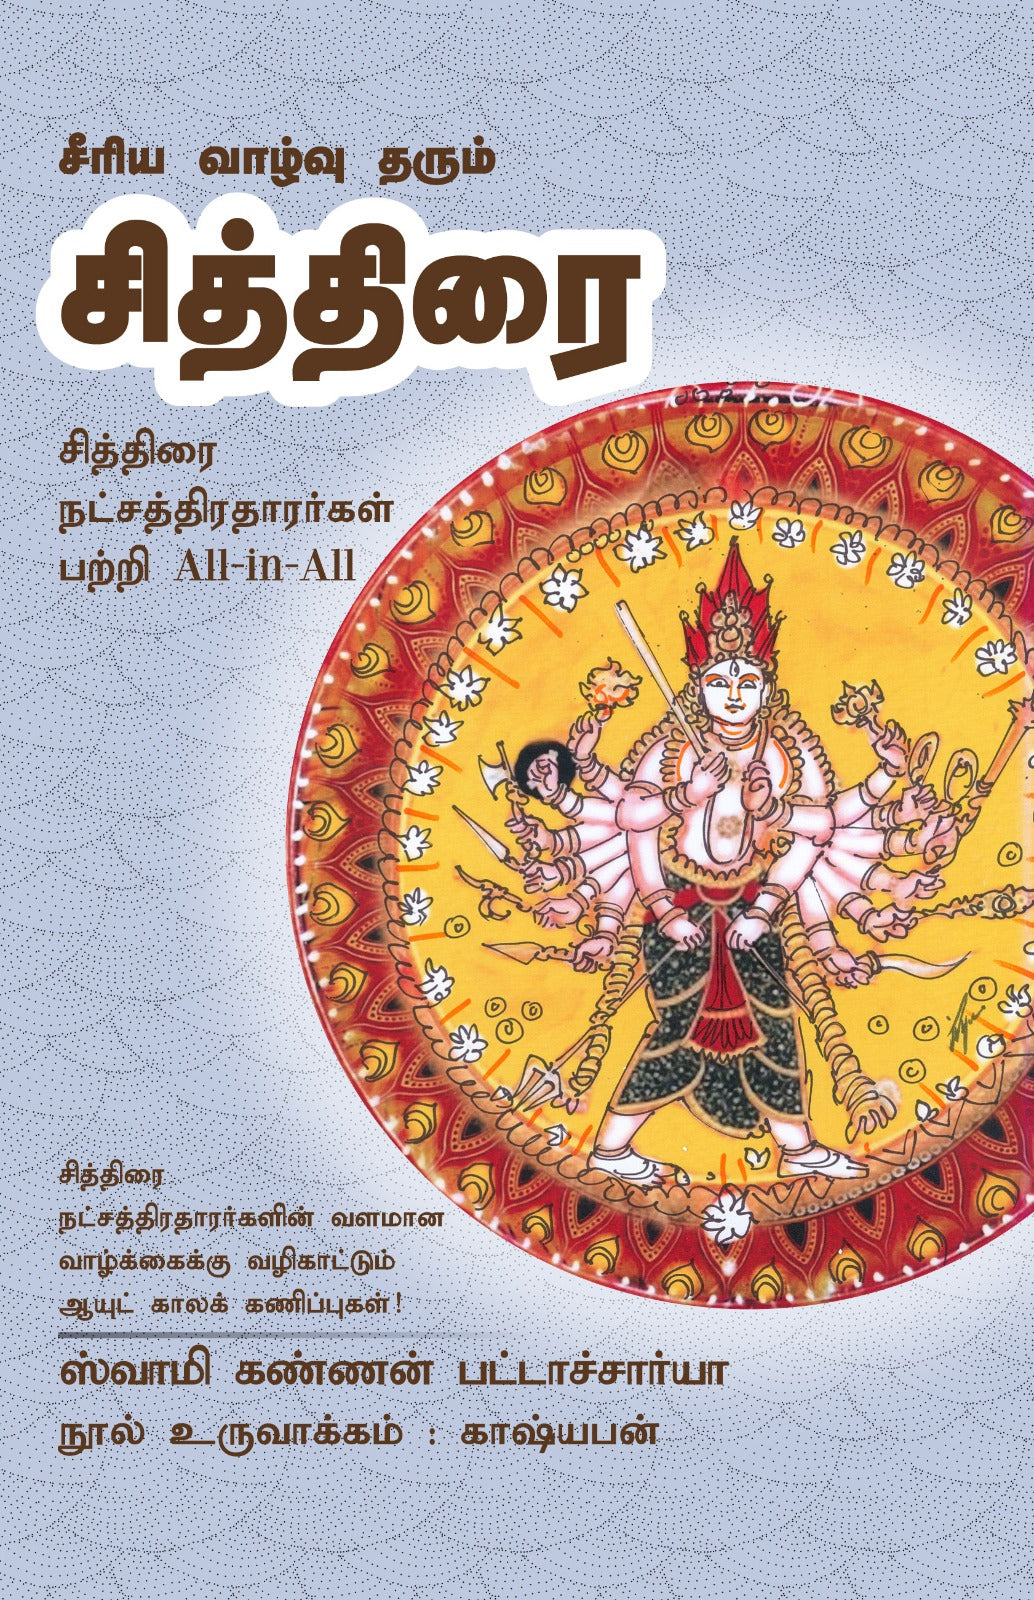 சித்திரை- Seeriya Vazhvu Tharum Chithirai All-in-All About Chithirai Nakshatra- Tamil